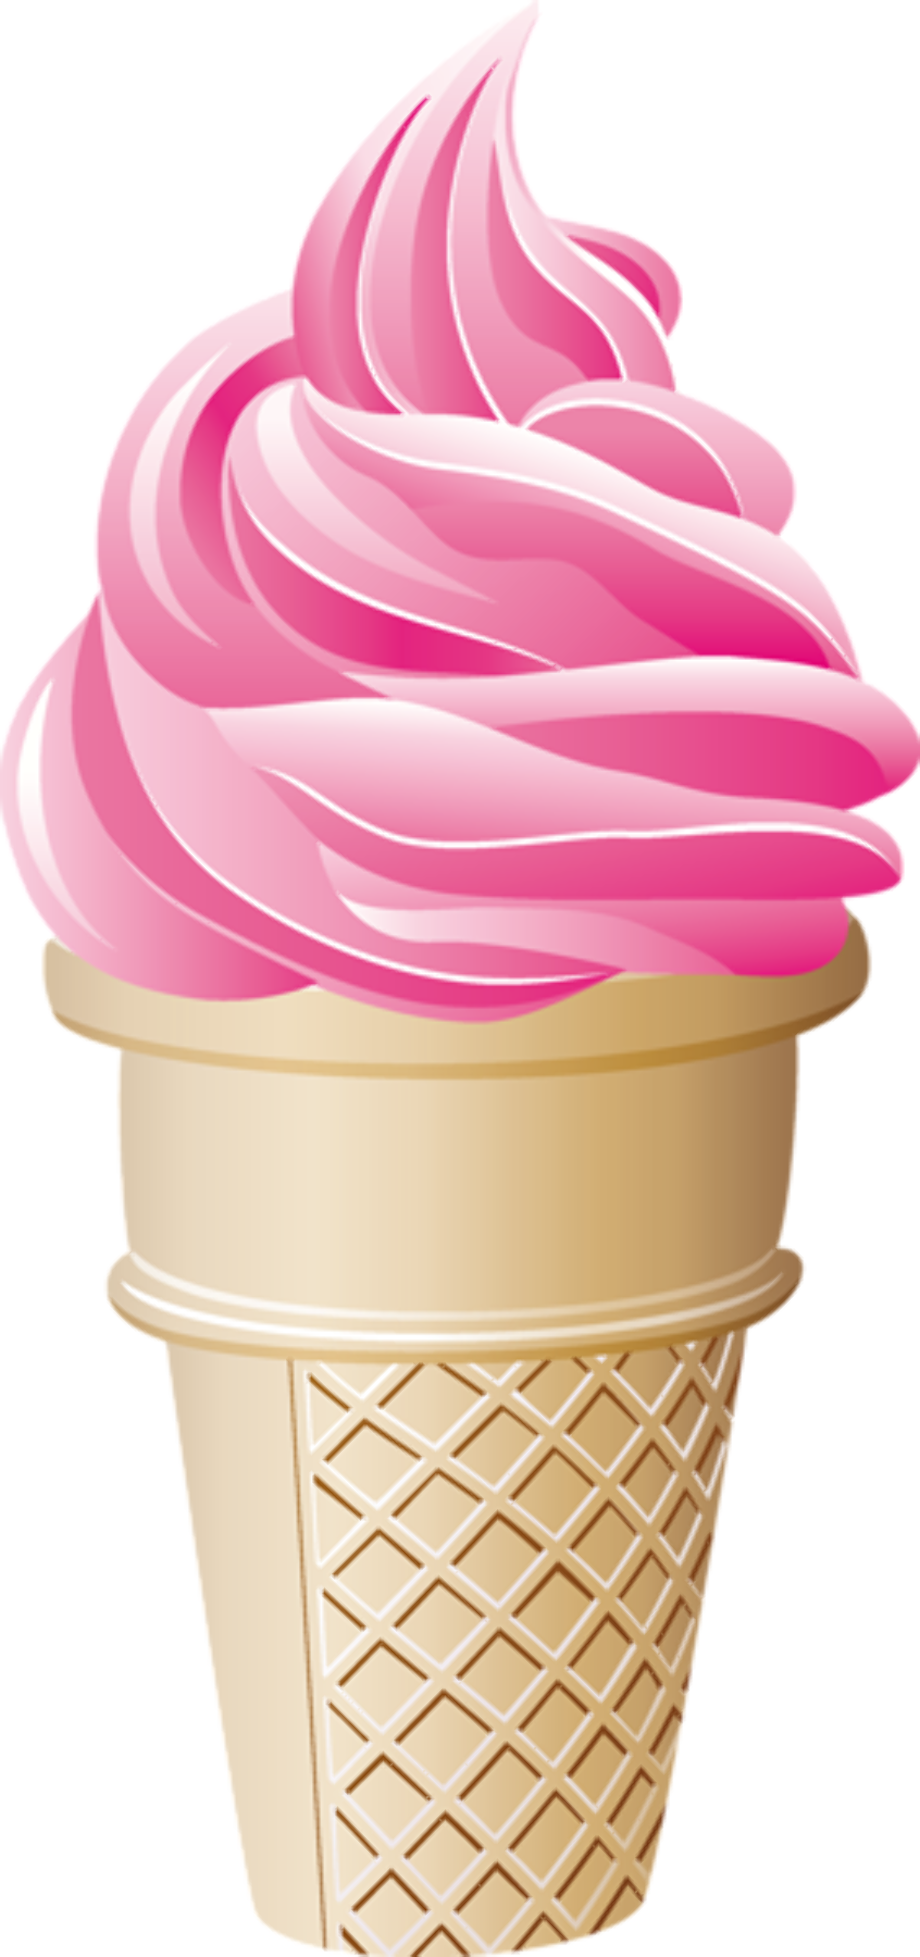 ice cream clipart strawberry